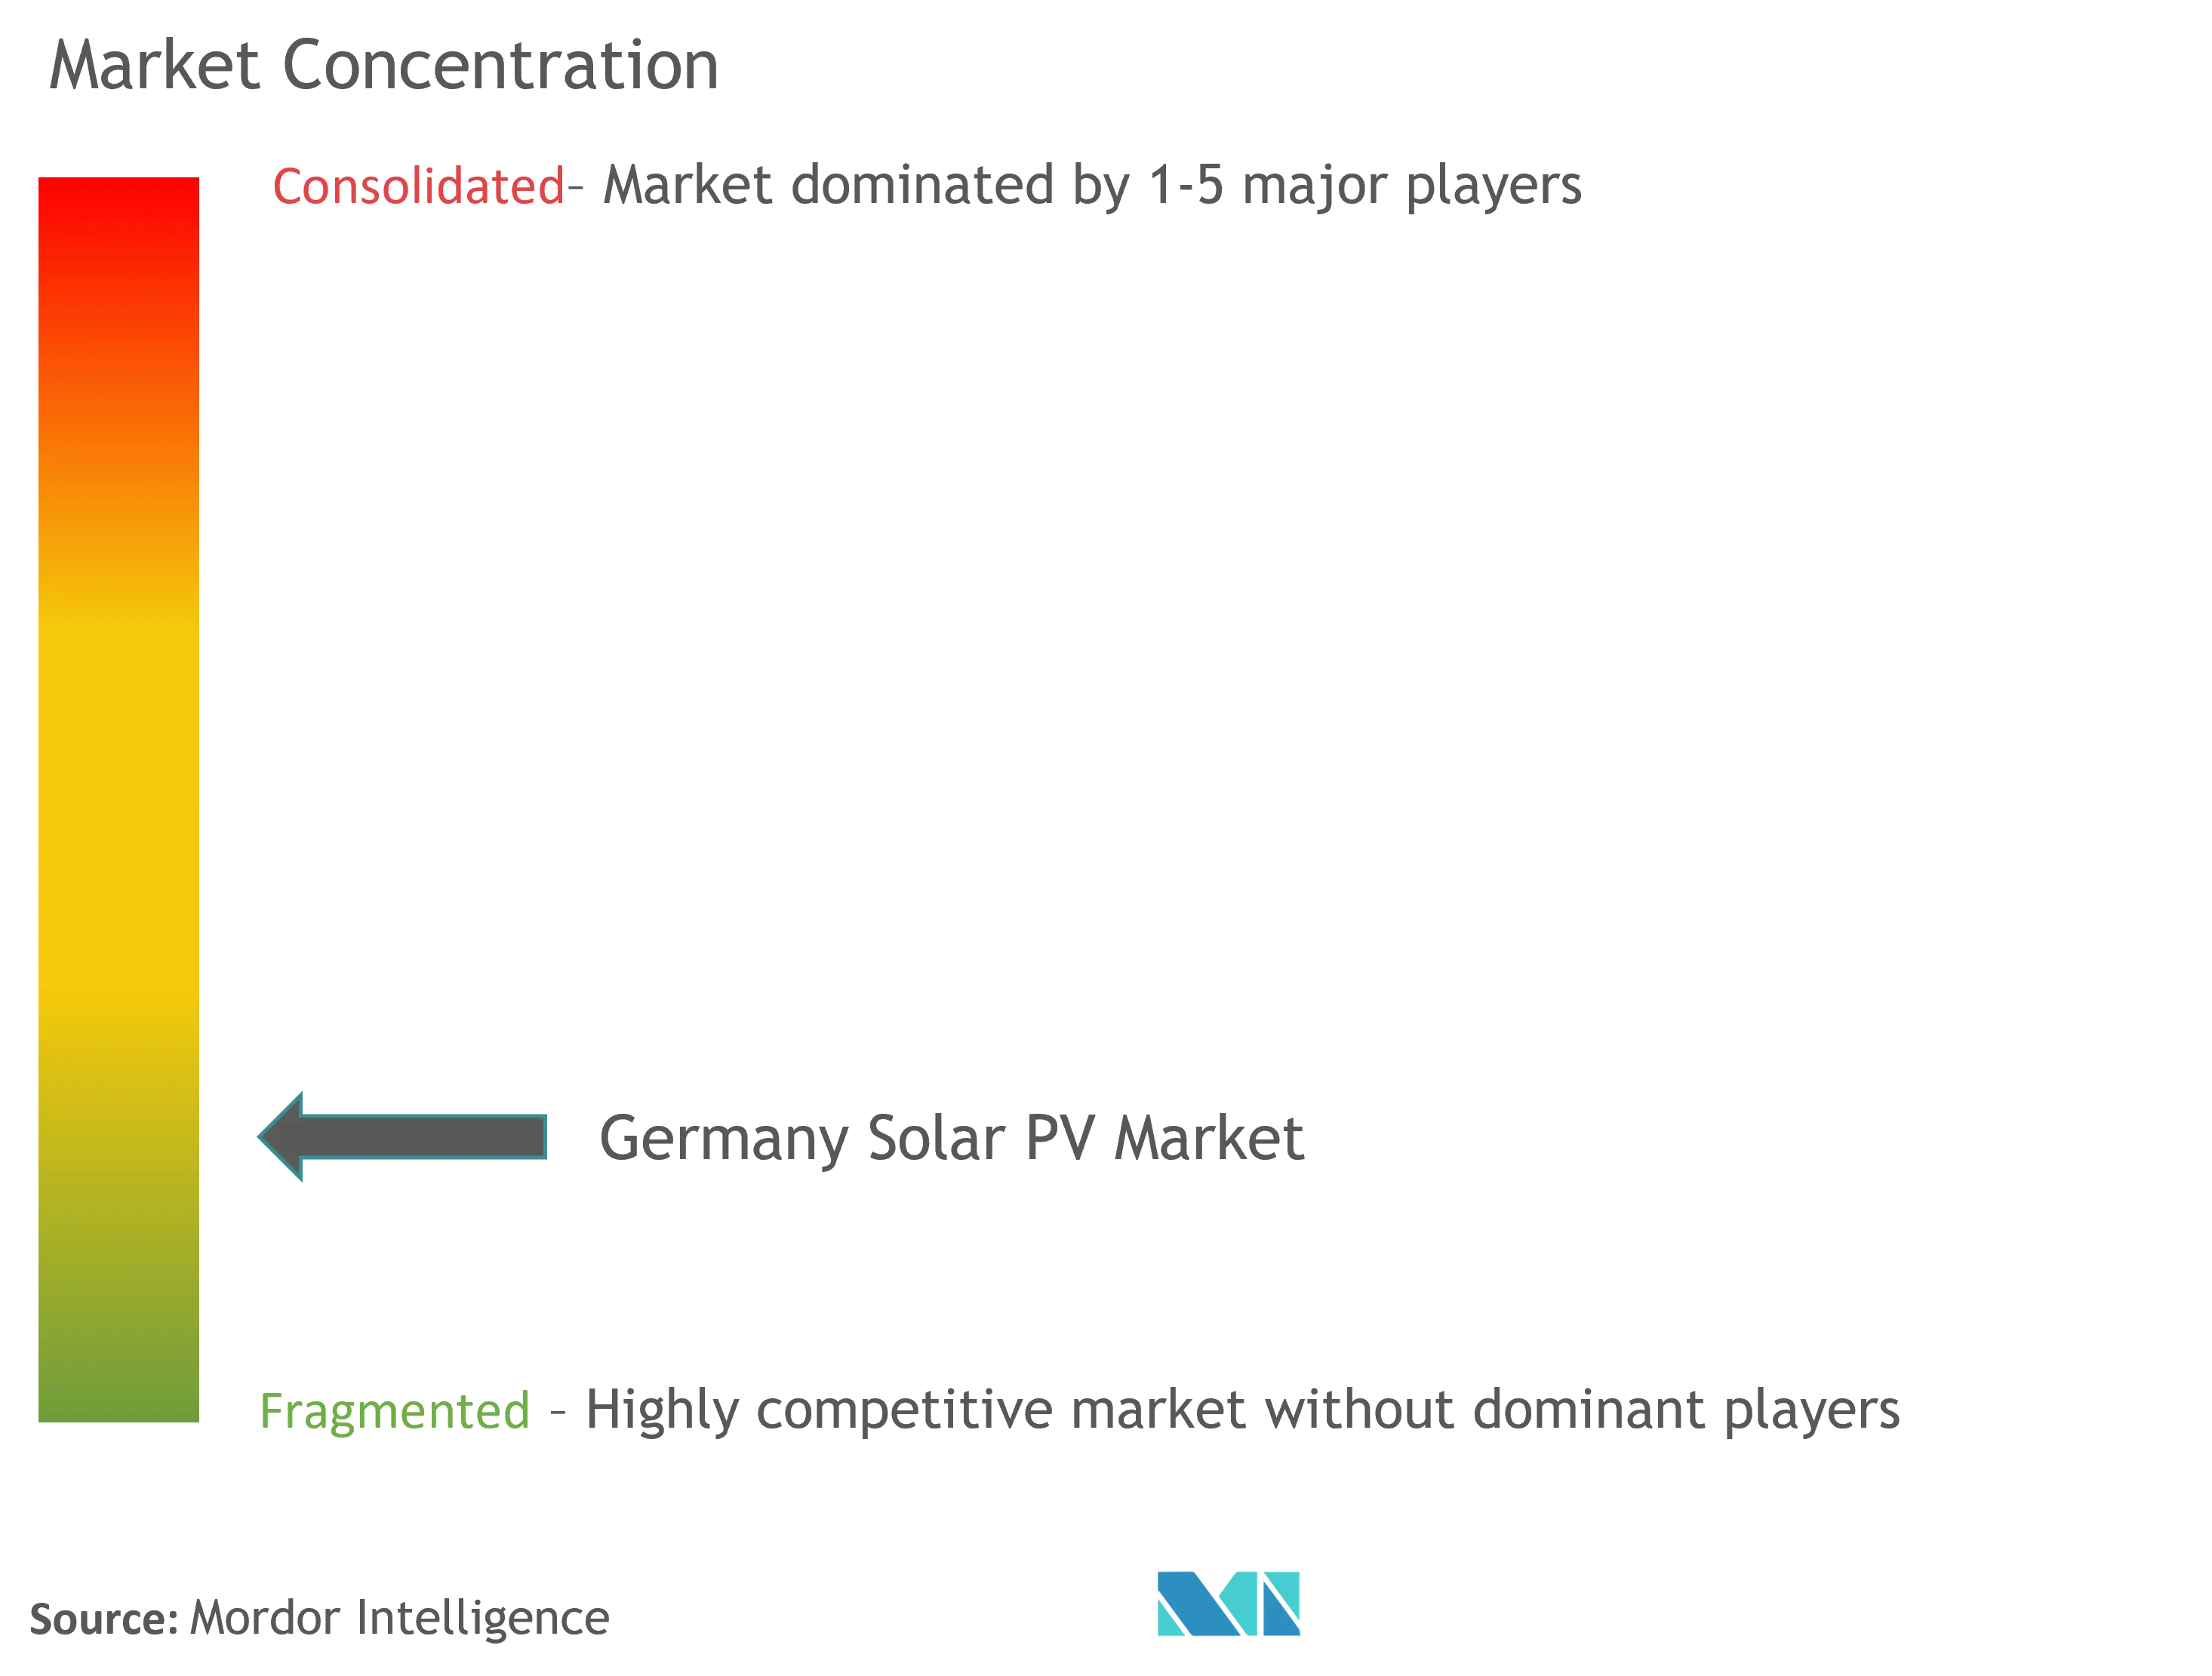 Germany Solar Inverter Market  Concentration